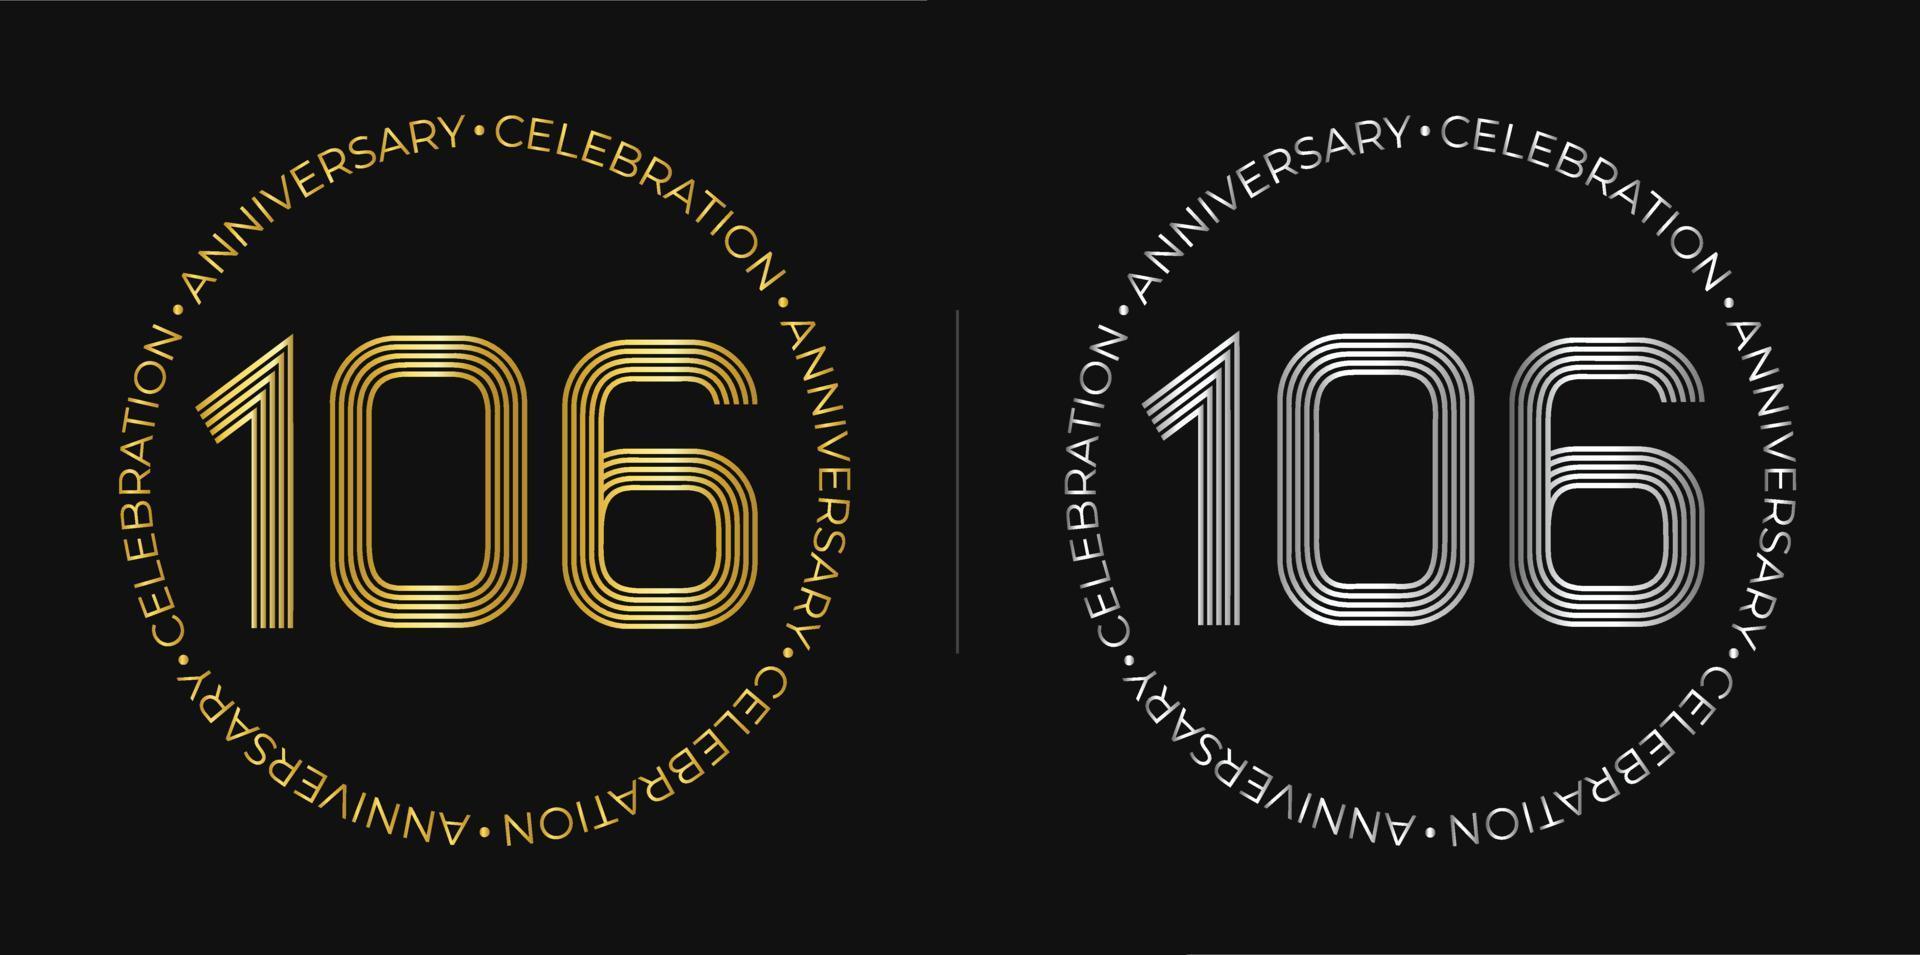 106º aniversário. banner de celebração de aniversário de cento e seis anos em cores douradas e prateadas. logotipo circular com design de números originais em linhas elegantes. vetor